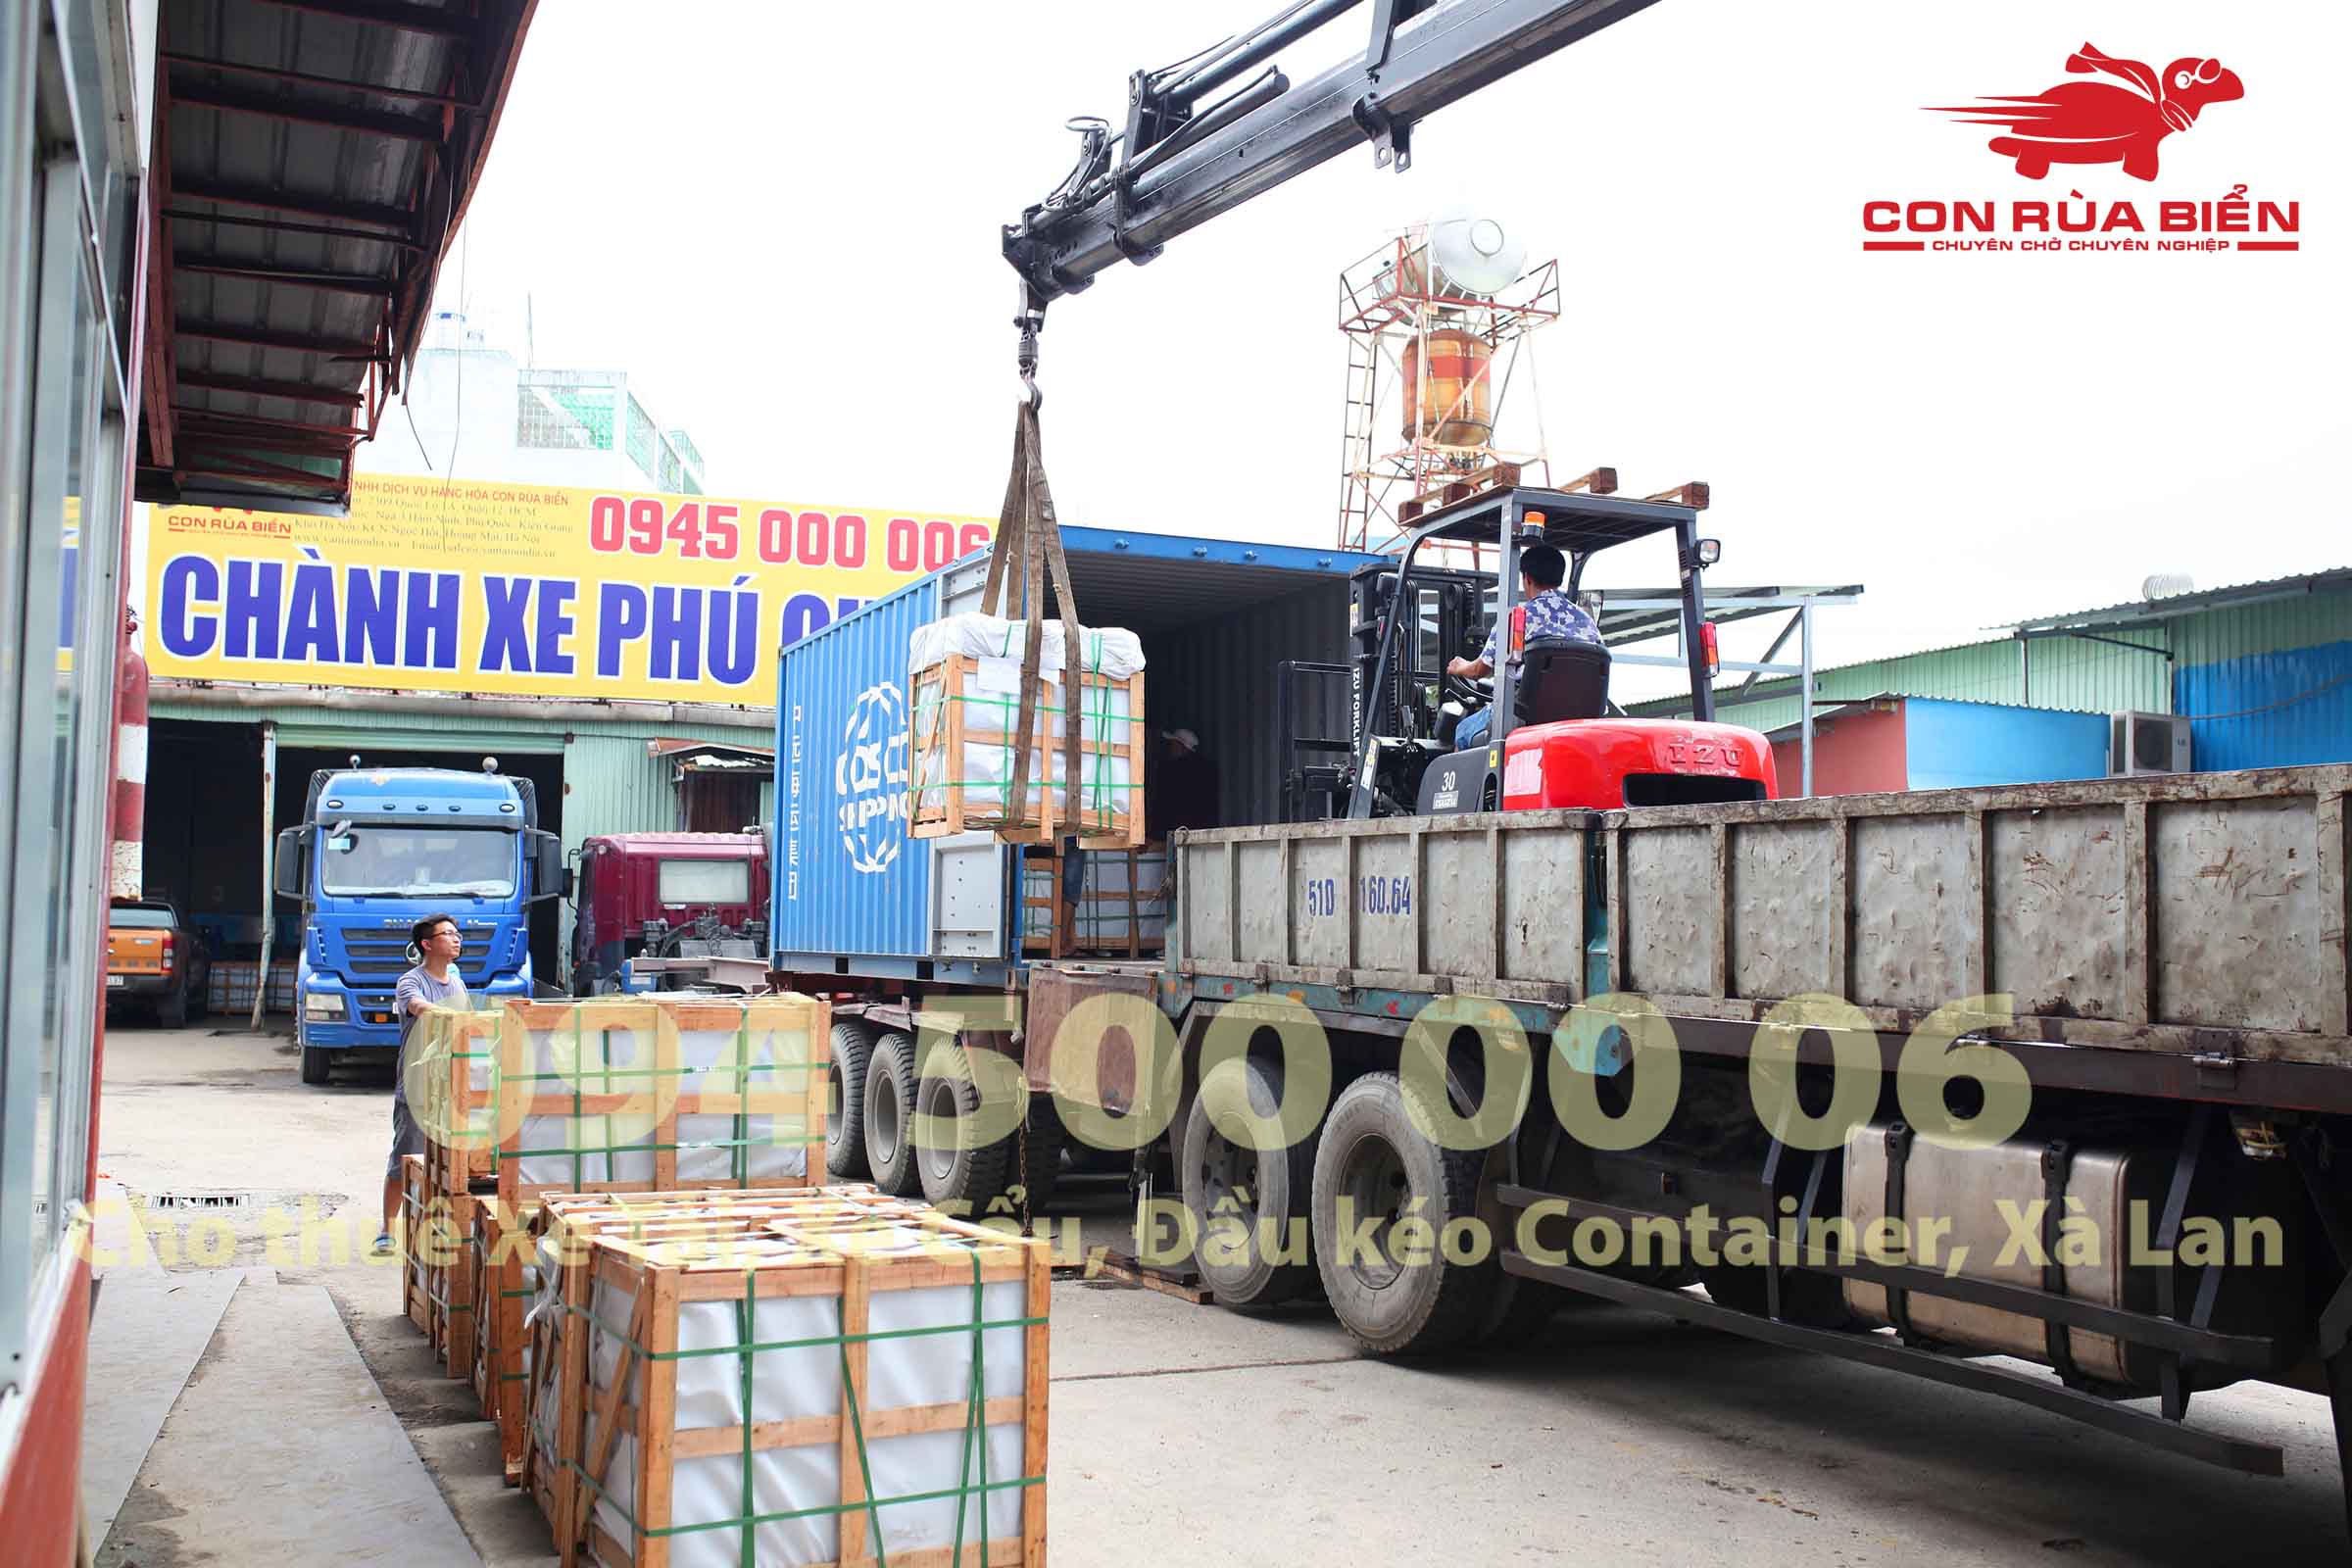 Chành xe Phú Quốc - Con Rùa Biển là đơn vị vận tải hàng hóa đang cung cấp dịch vụ Xe tải đi Phú Quốc Kiên Giang với nhiều hình thức đa dạng cho khách hàng.